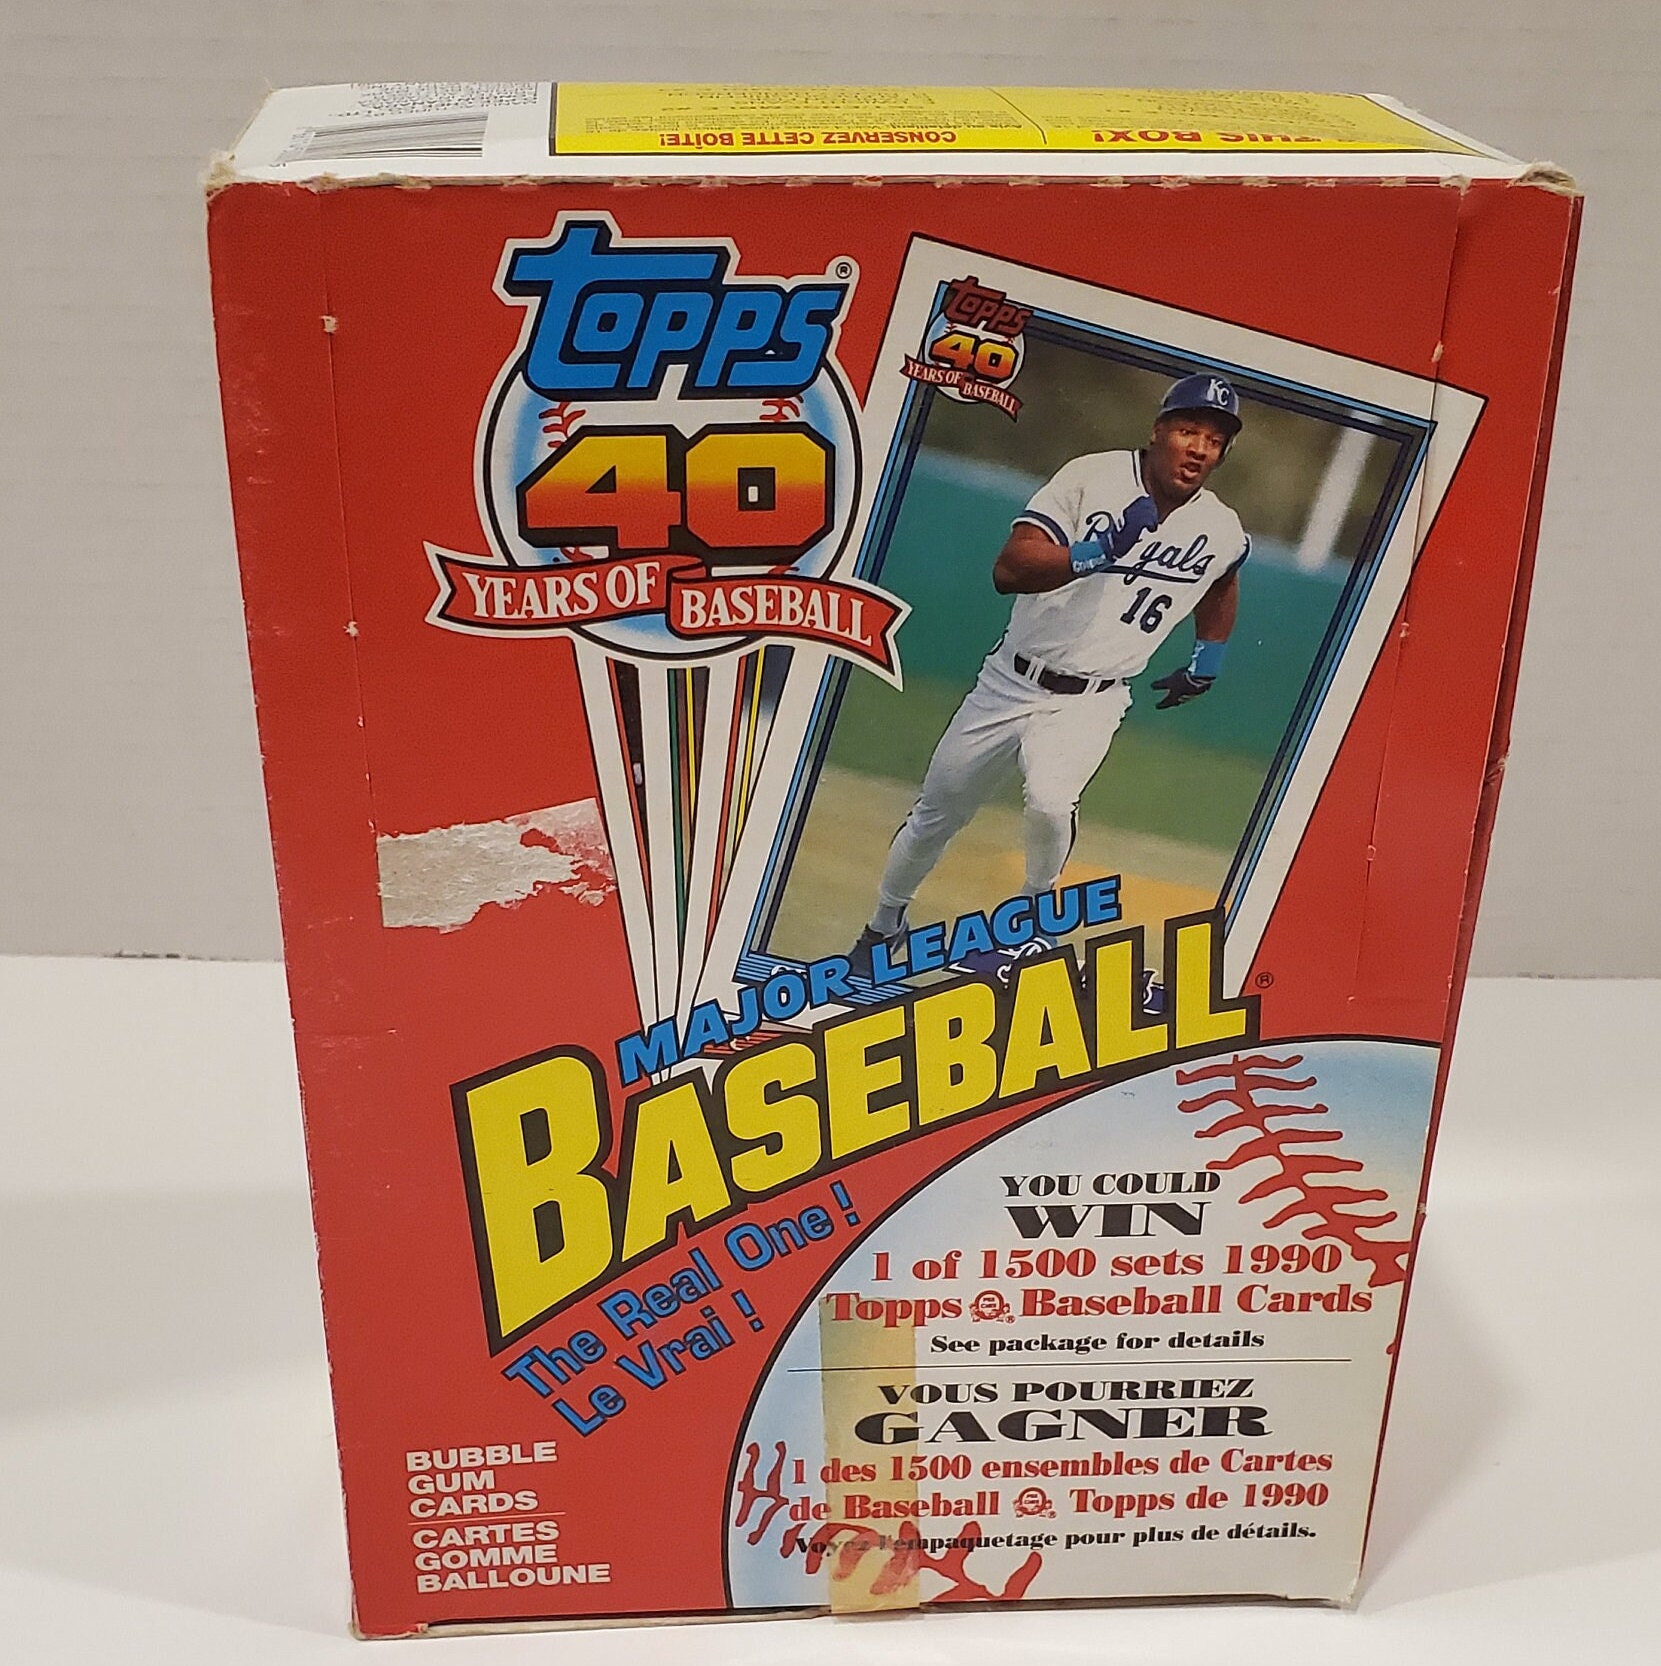 1993 O Pee Chee Premier Baseball Complete Set 1 - 132